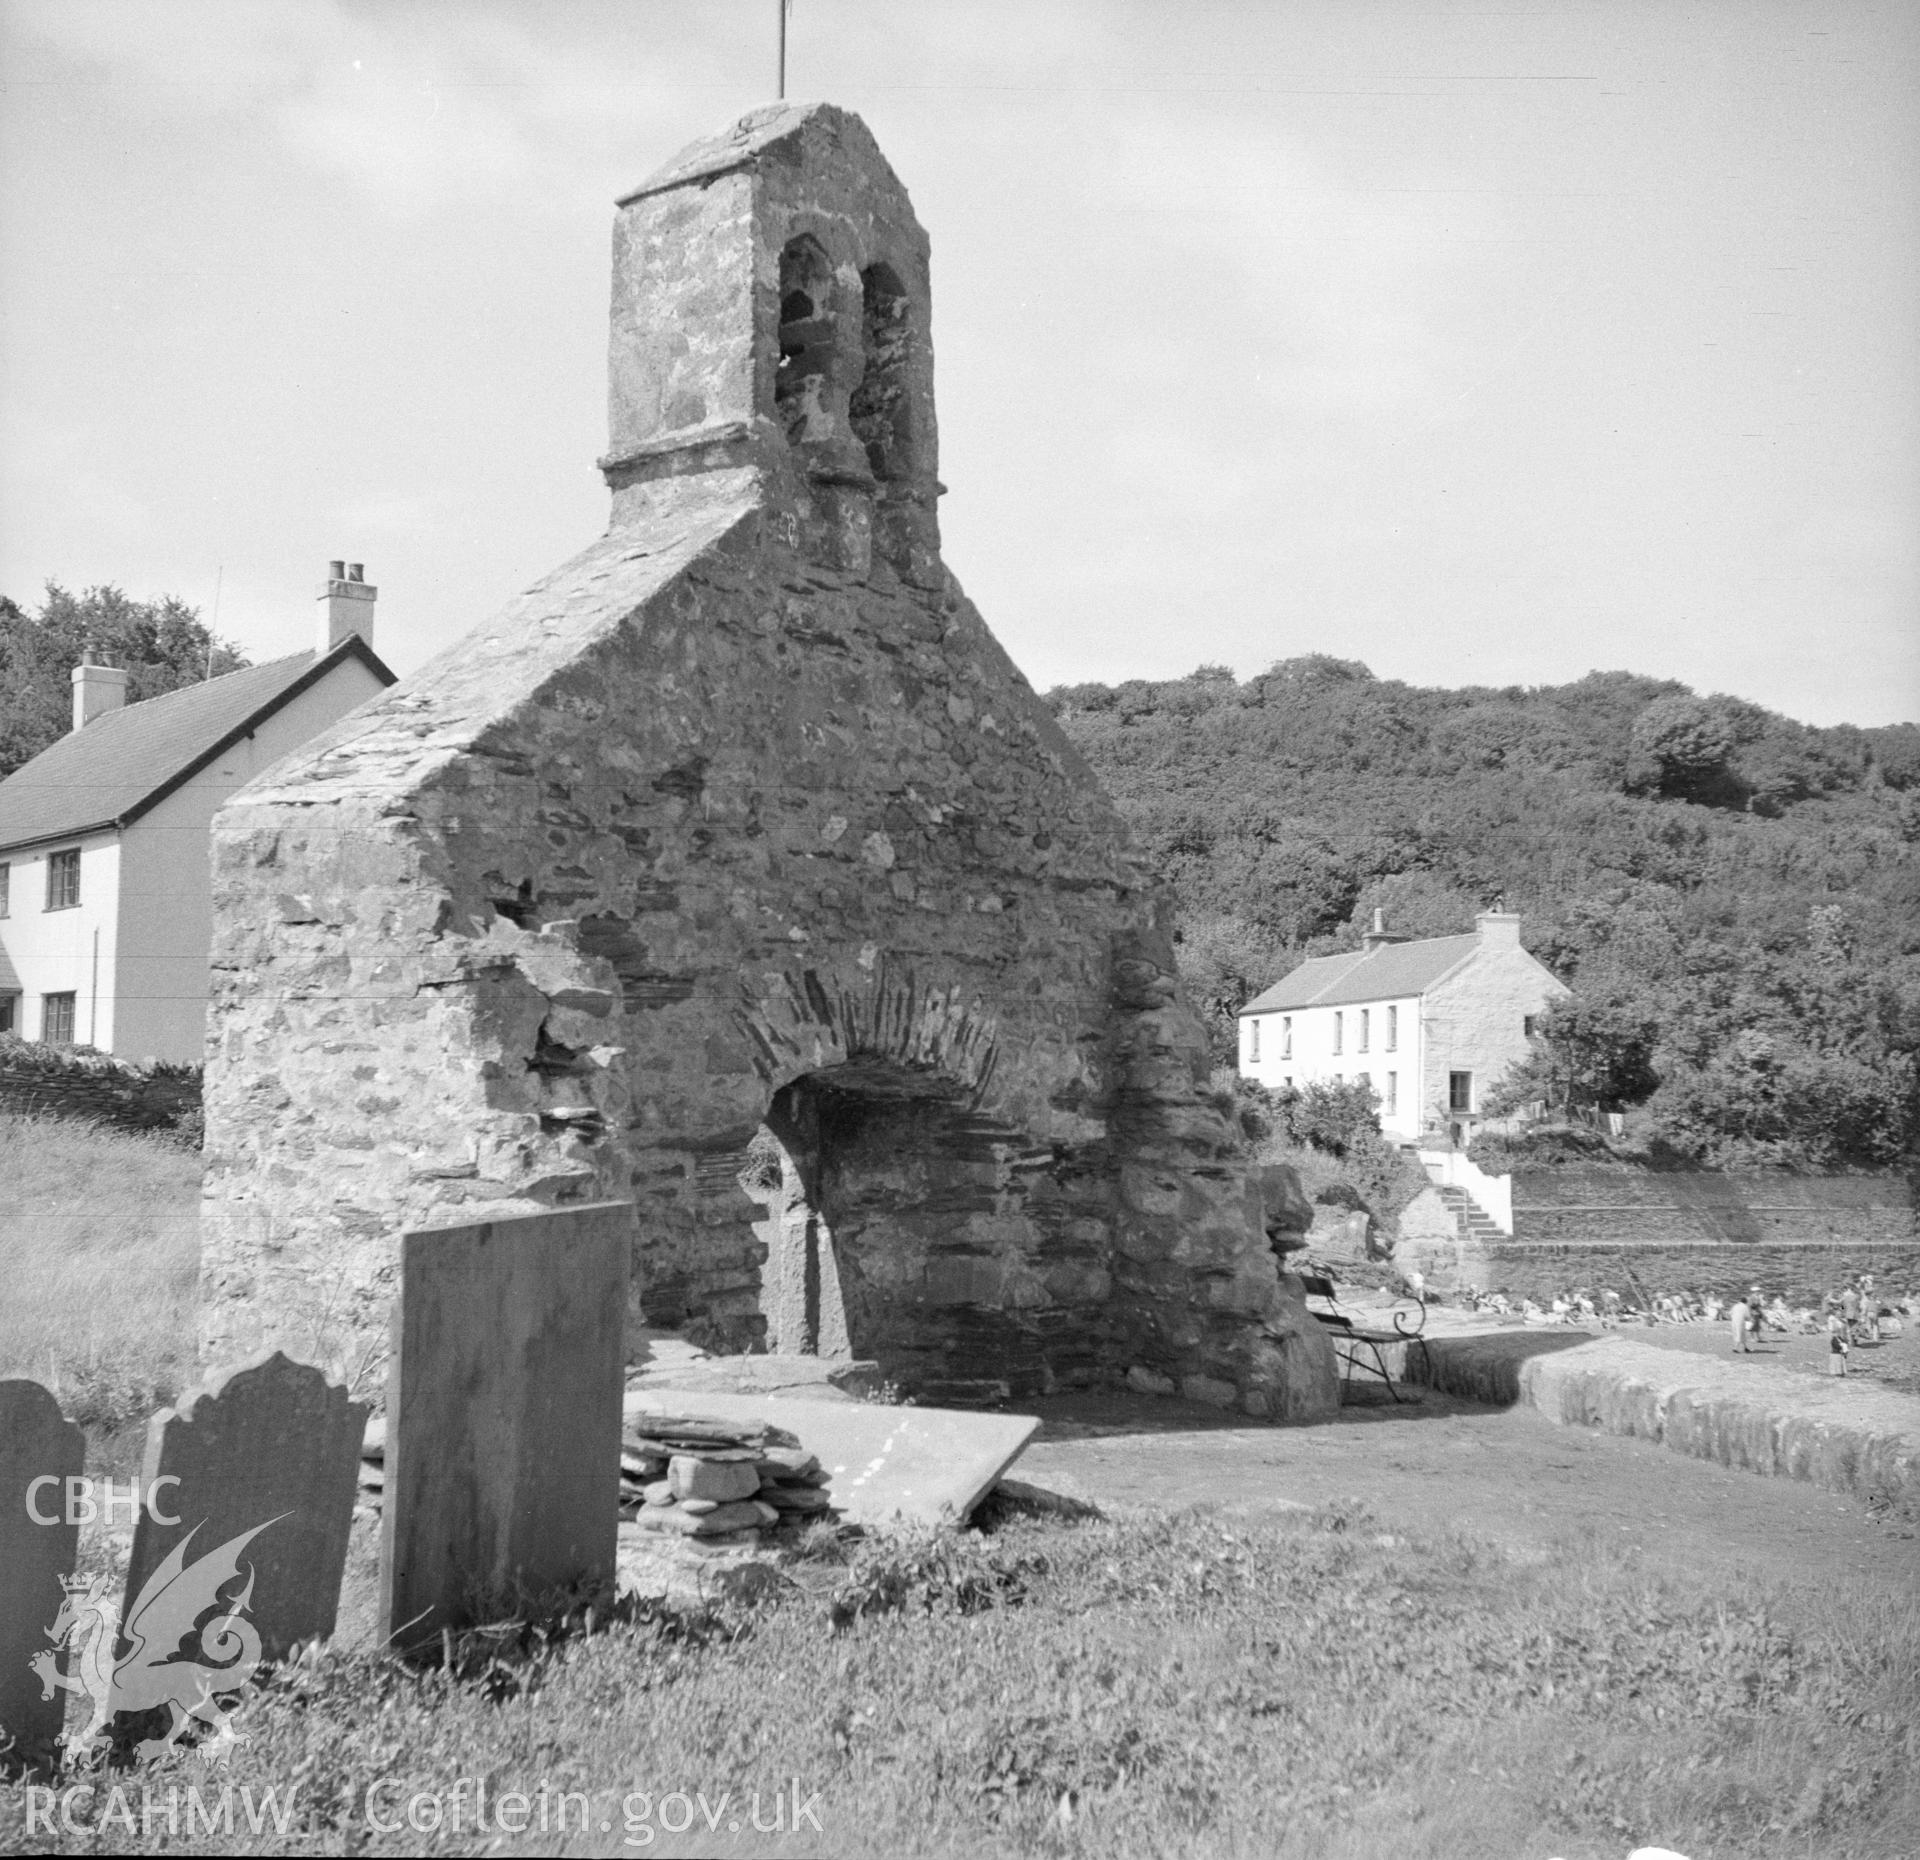 Digital copy of an acetate negative showing Cwm yr Eglwys, Dinas, 1956.